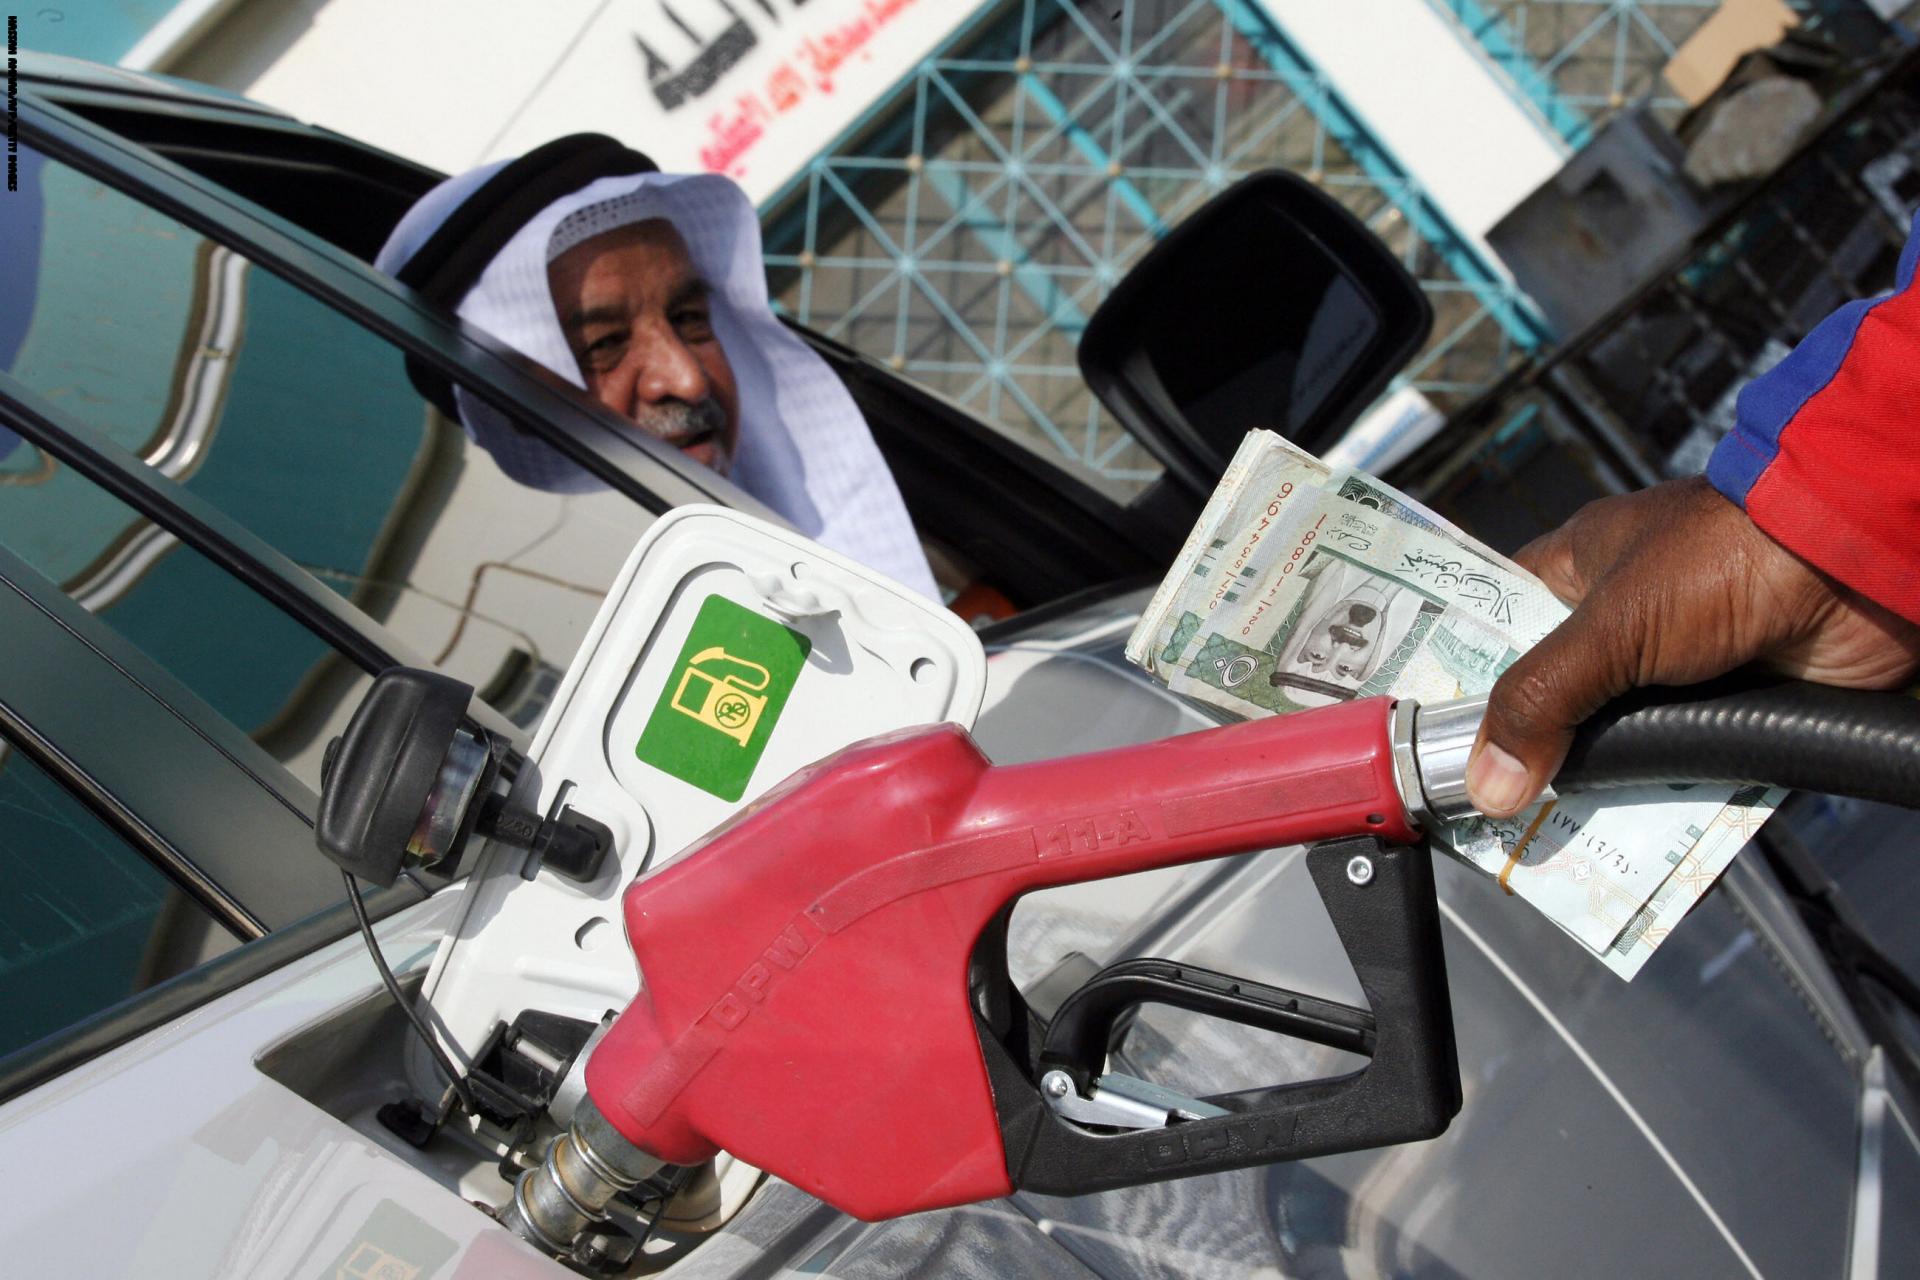 أخر تحديث في أسعار البنزين في السعودية لشهر أبريل 2020 وأسباب الانخفاض في سعر الوقود العالمي